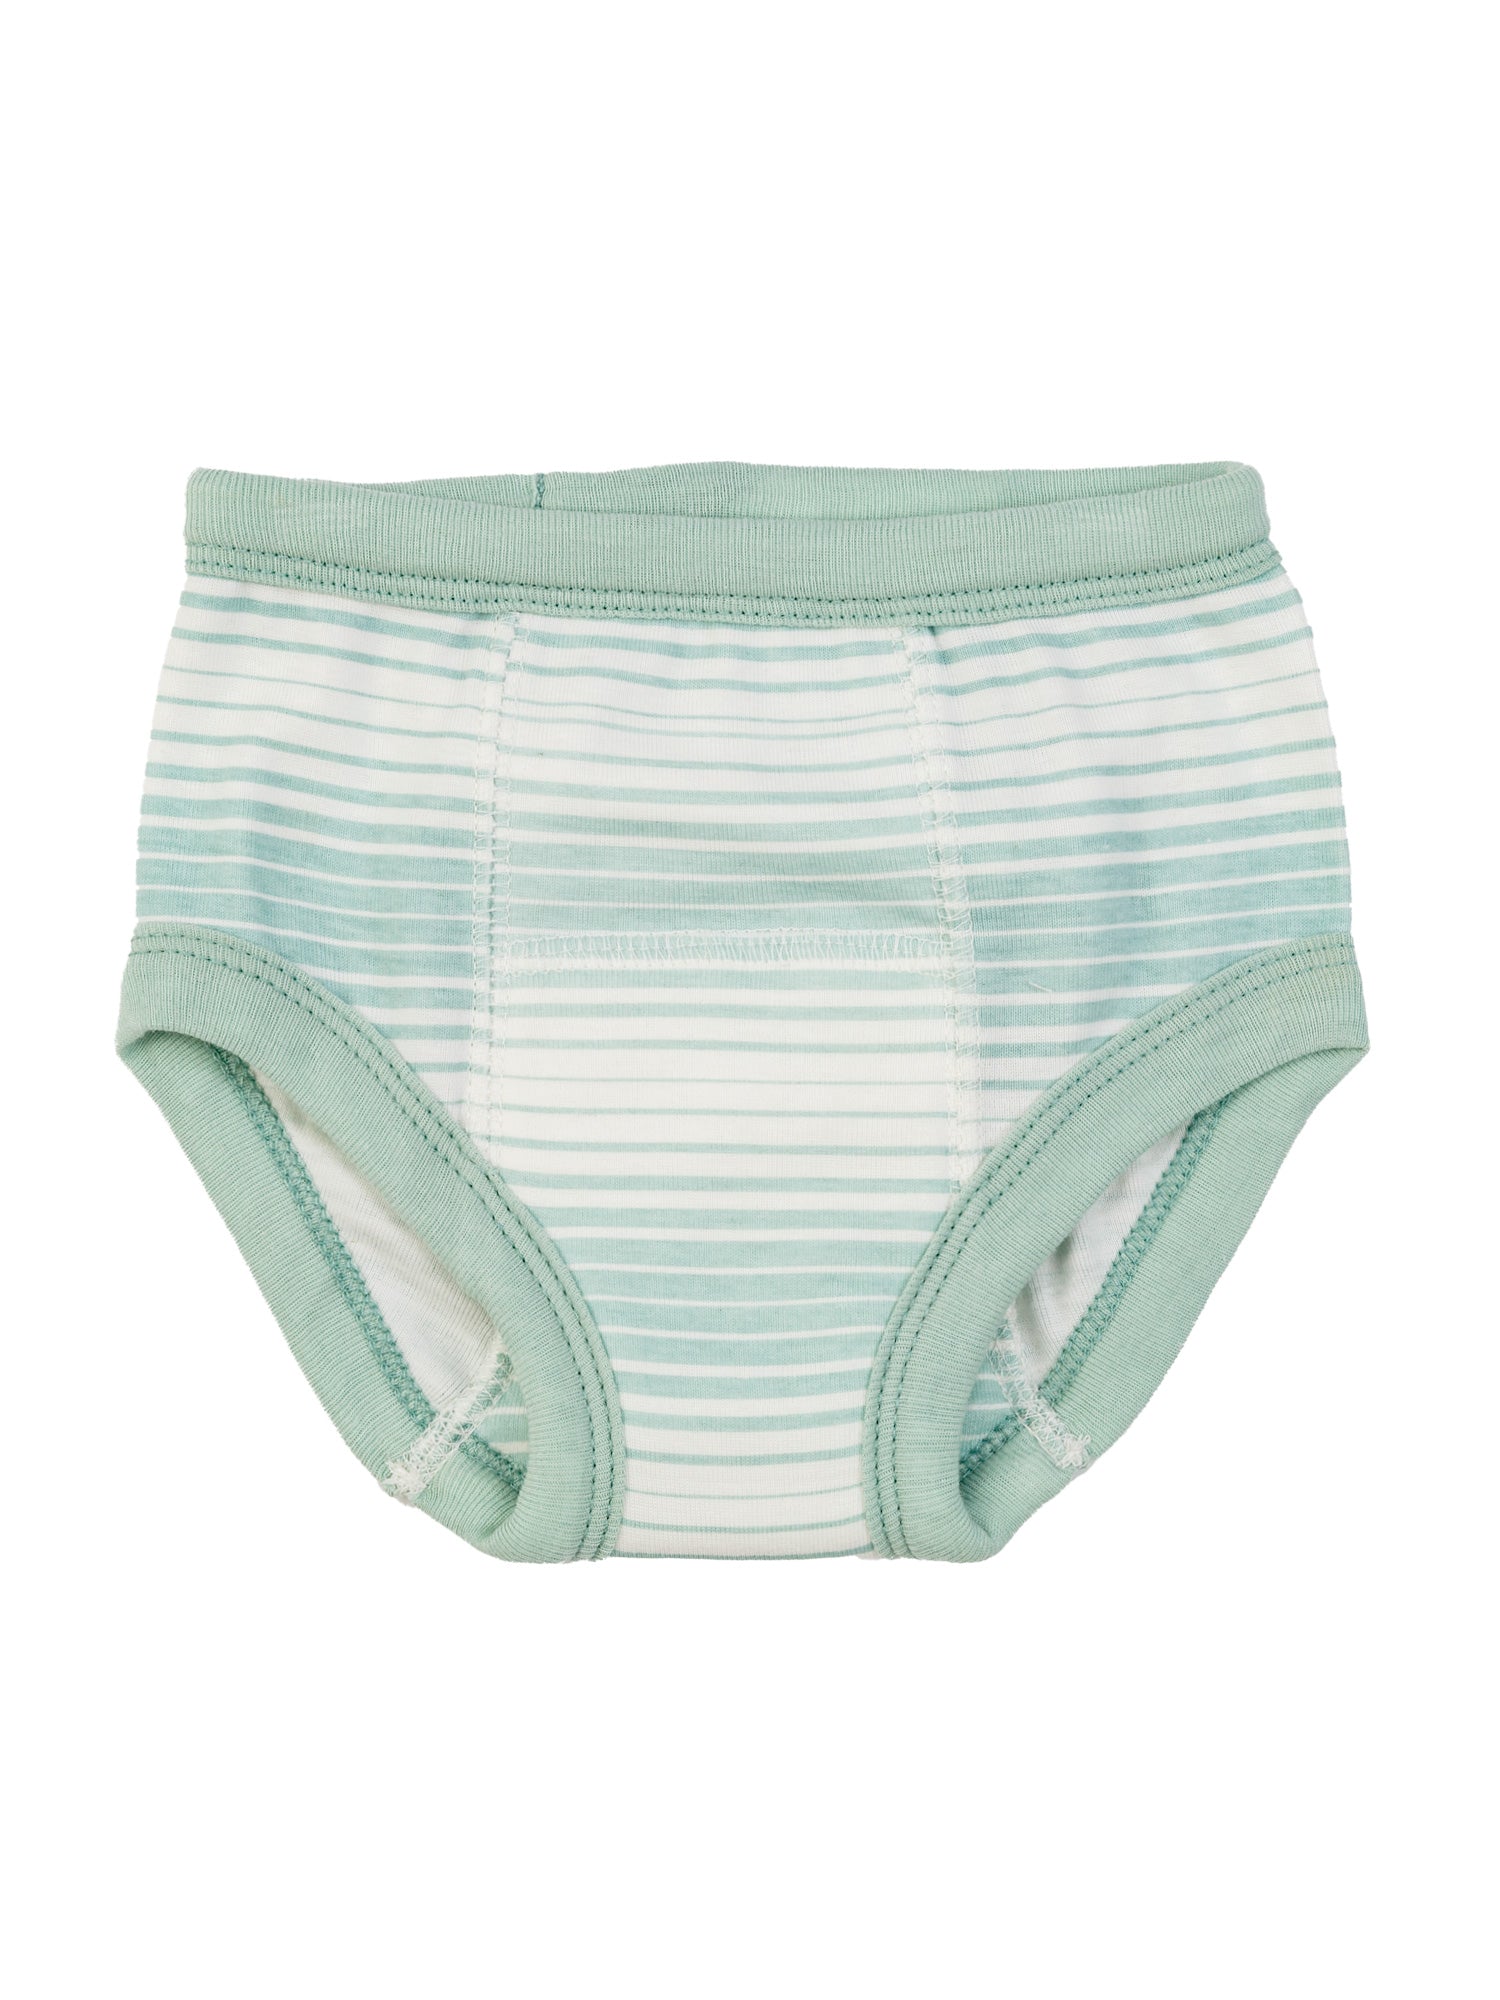 Cotton Baby Potty Training Underwear - Sea Green Stripe – Under